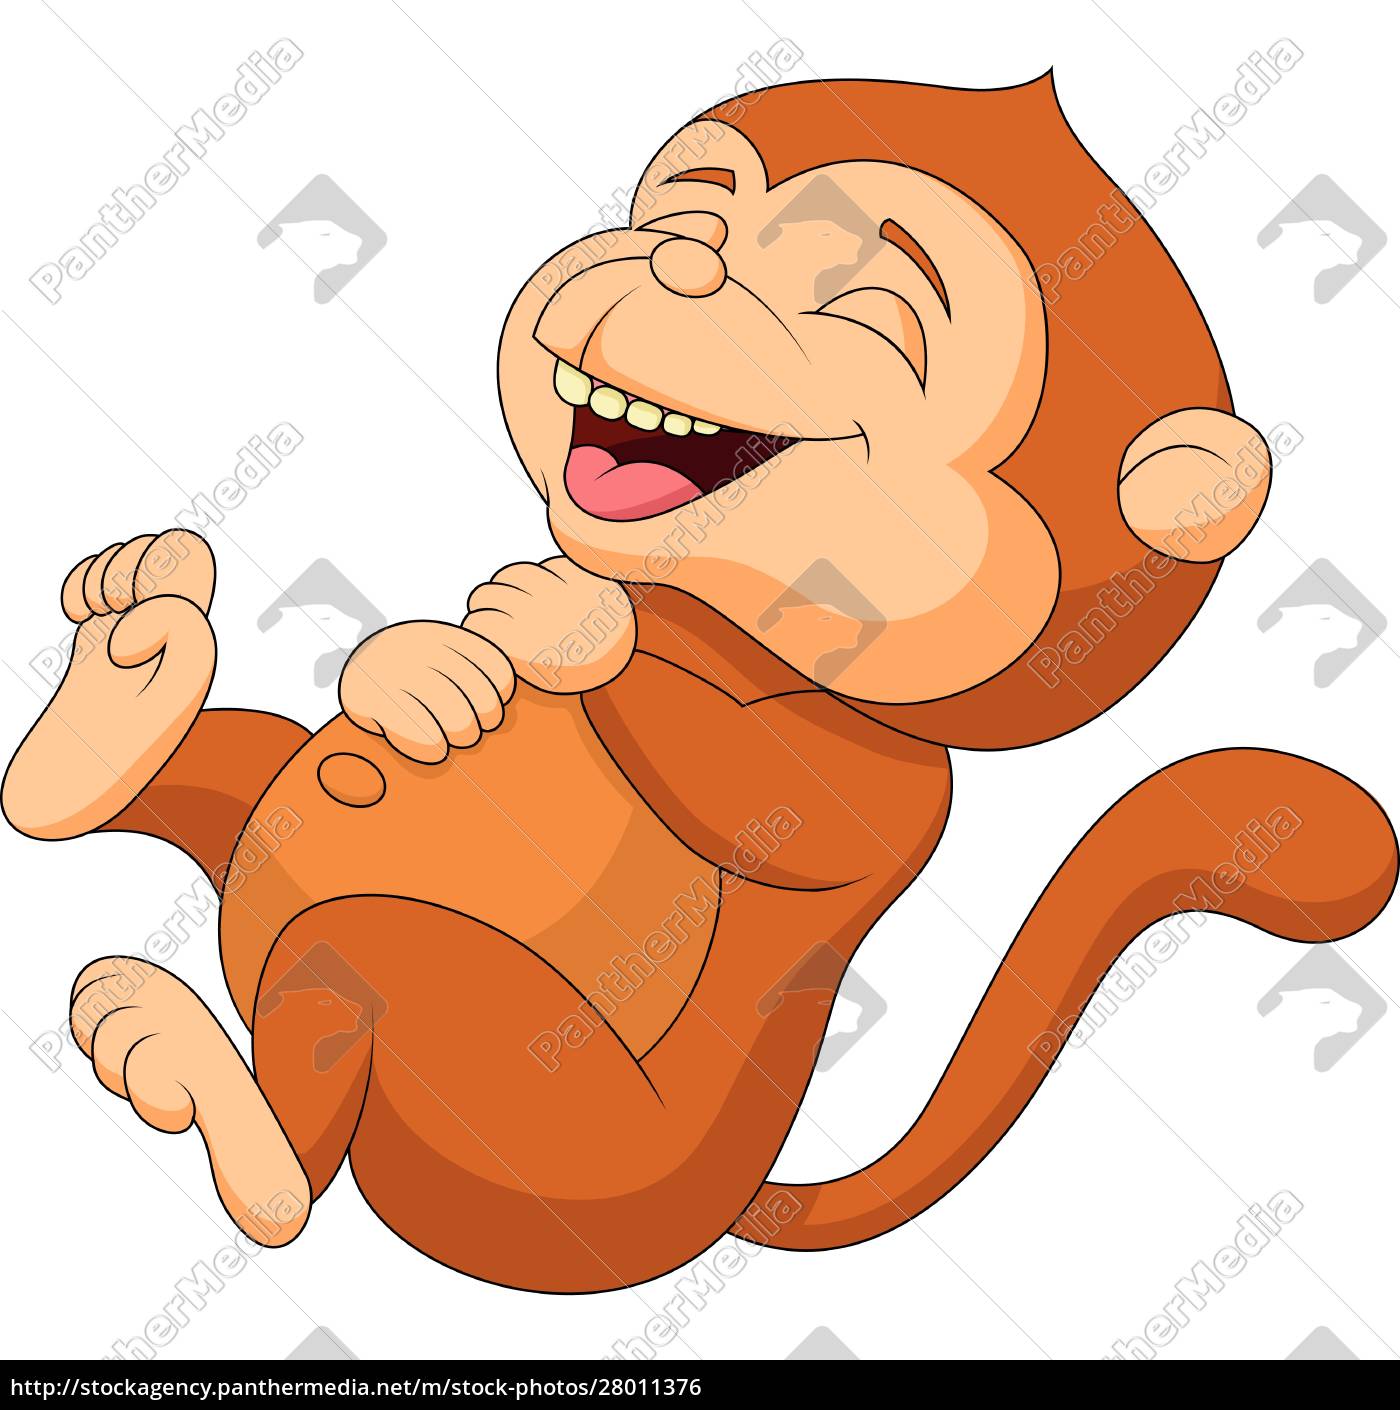 Desenho de macaco desenho, macaco de desenho animado, Personagem